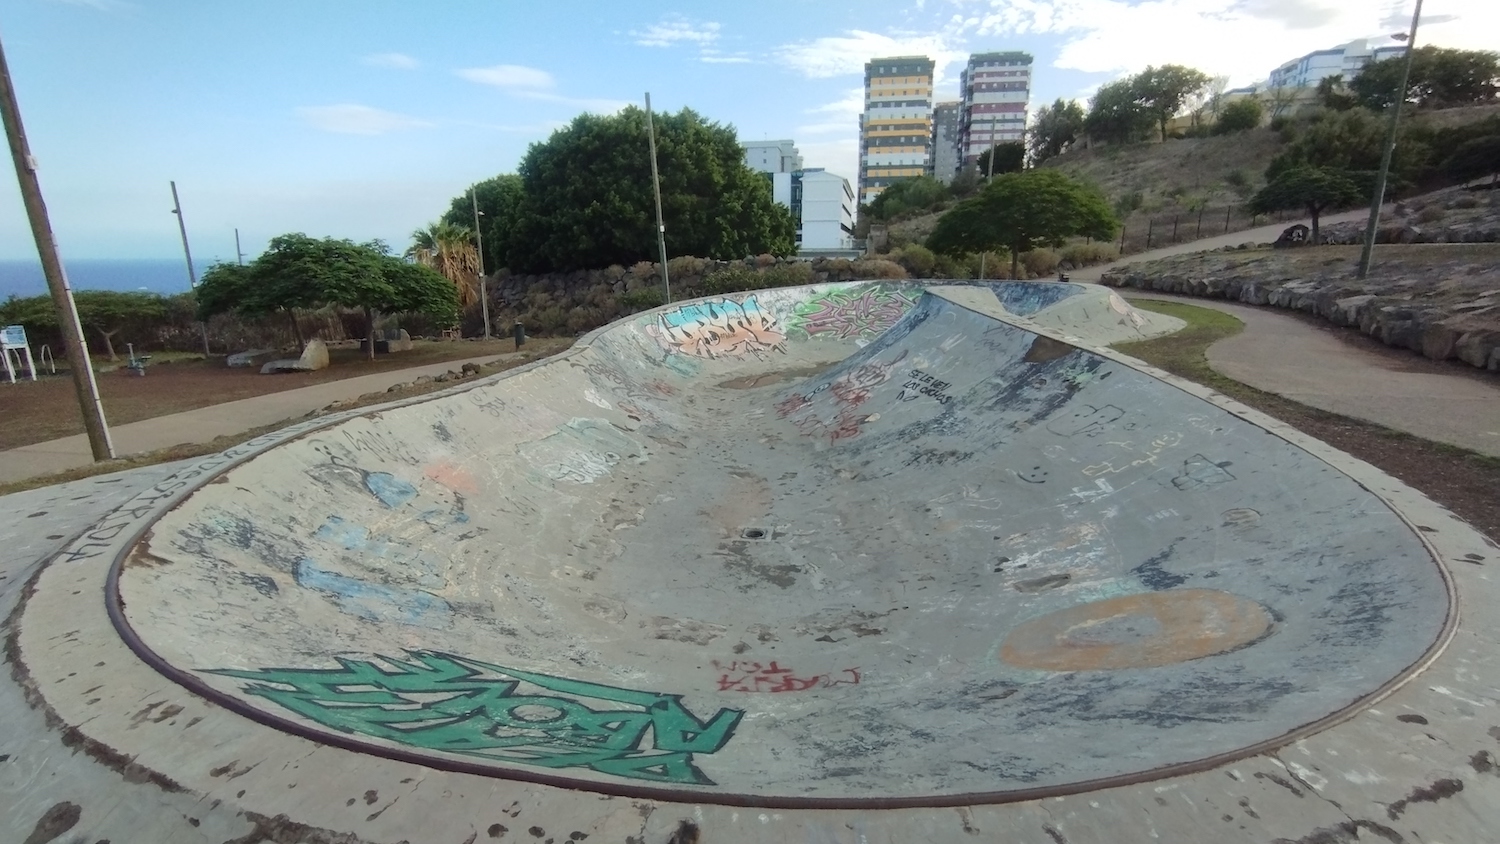 Los Cuchillitos park skatepark